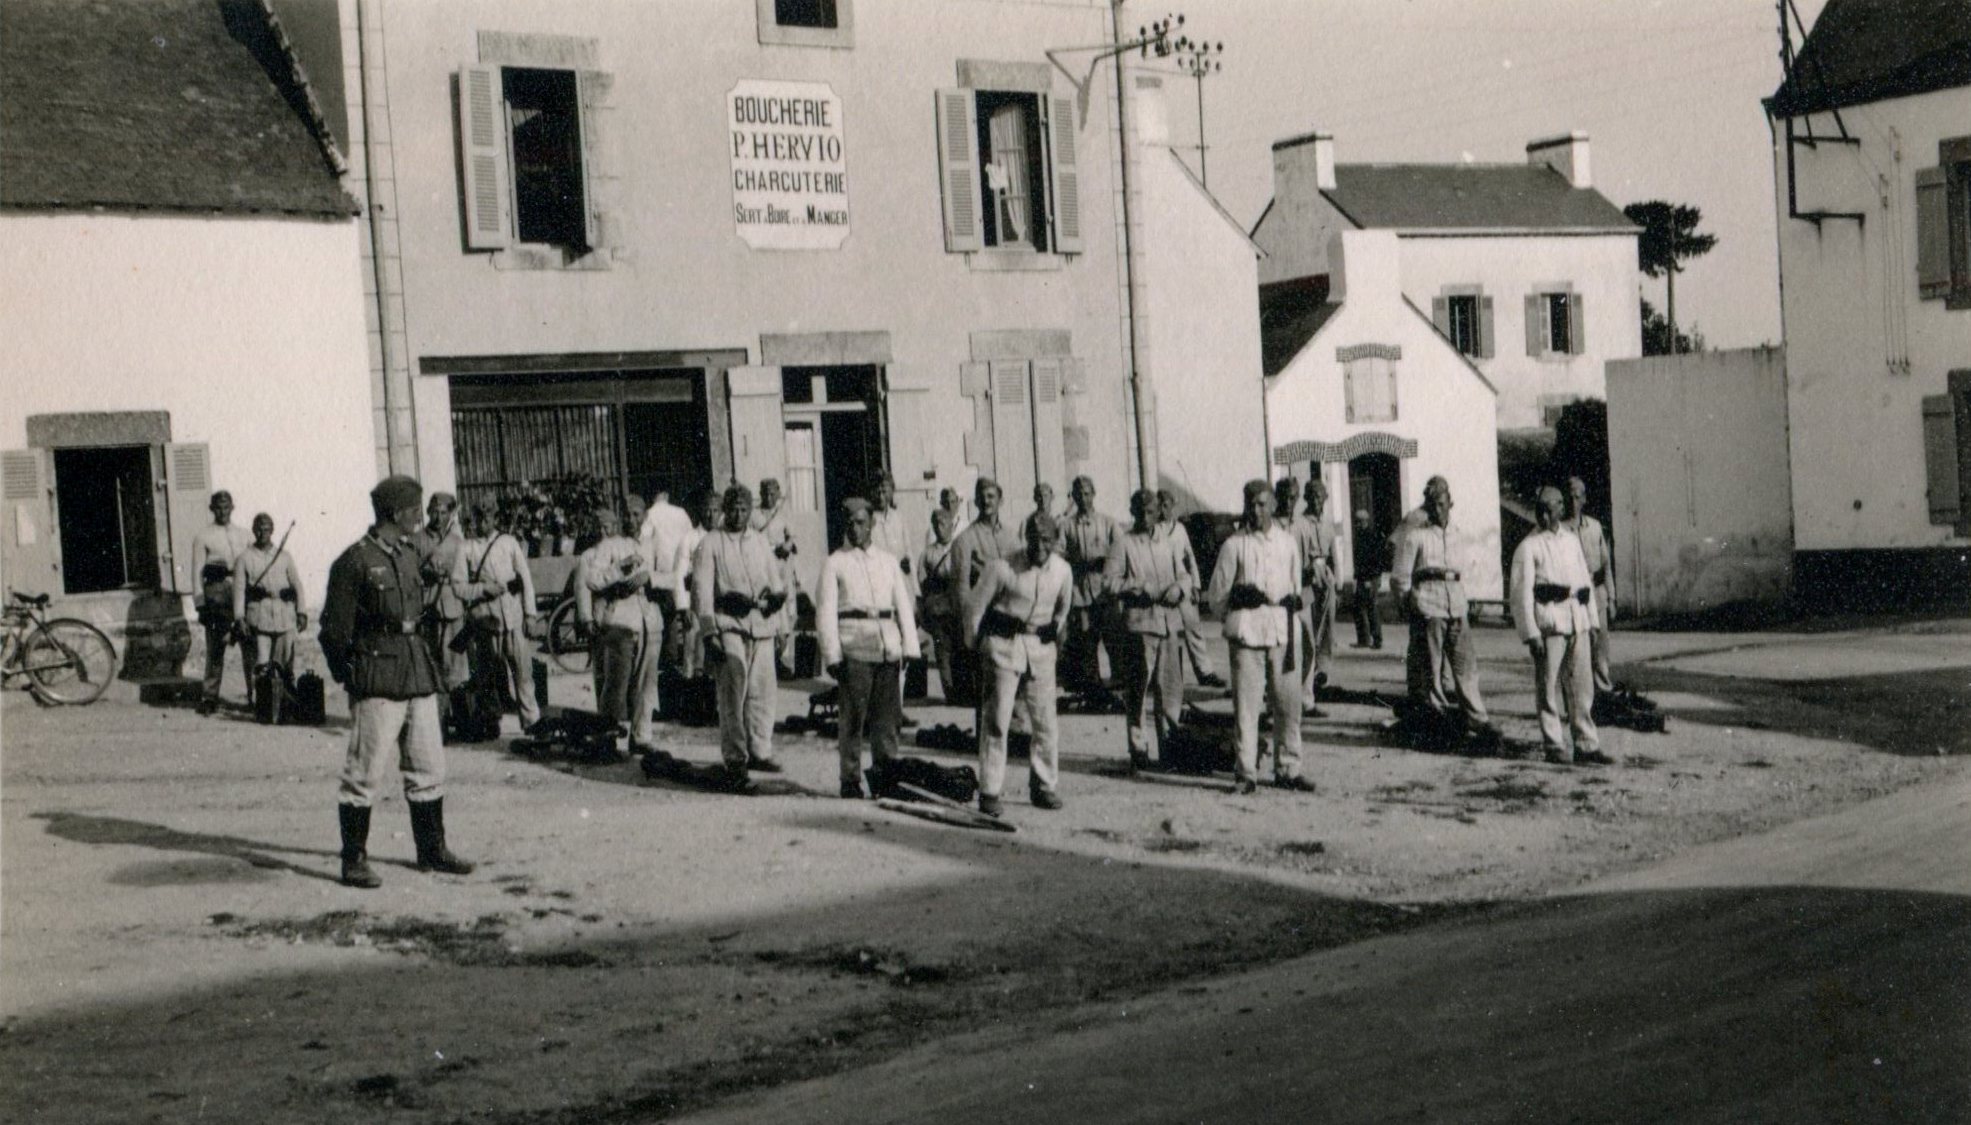 1941 boucherie Hervio